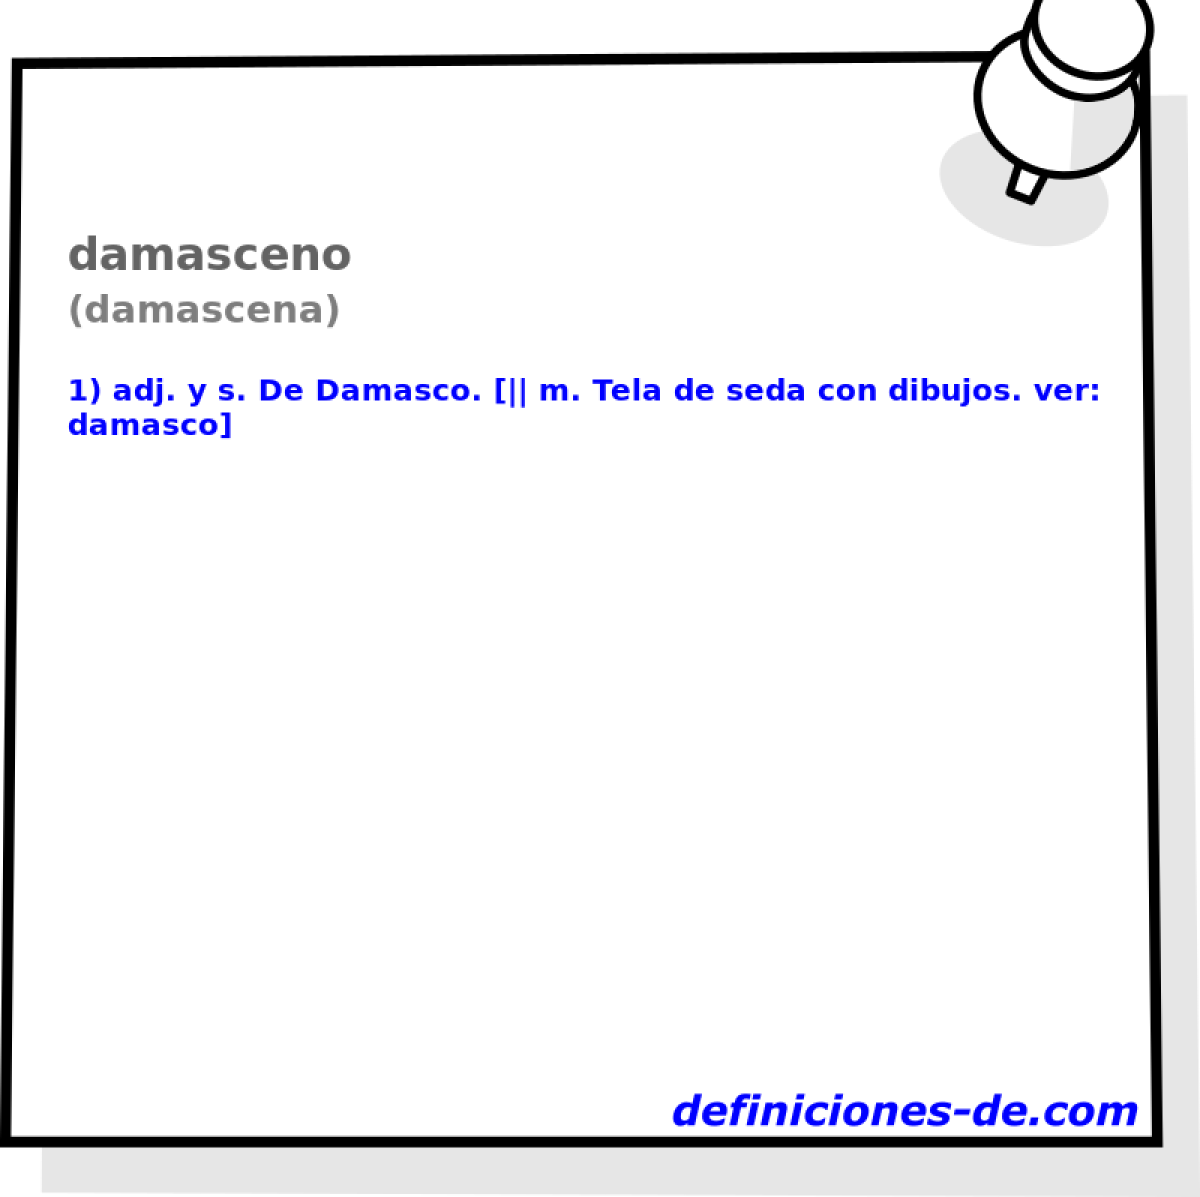 damasceno (damascena)